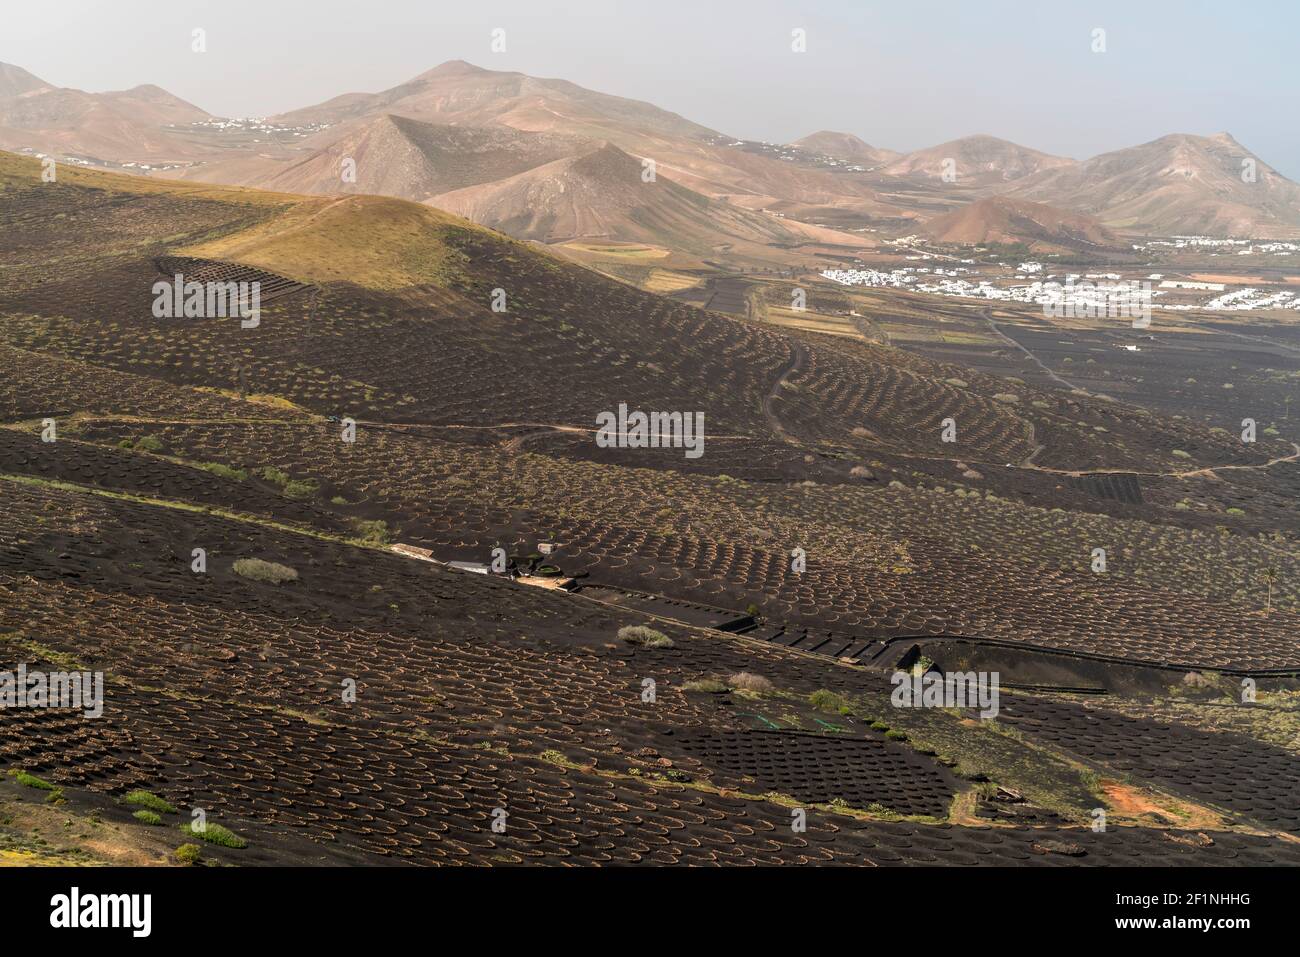 Landschaft mit Trockenfeldbau von Wein bei La Geria, Insel Lanzarote, Kanarische Inseln, Spanien |  Landscape with dryland wine farming near La Geria Stock Photo